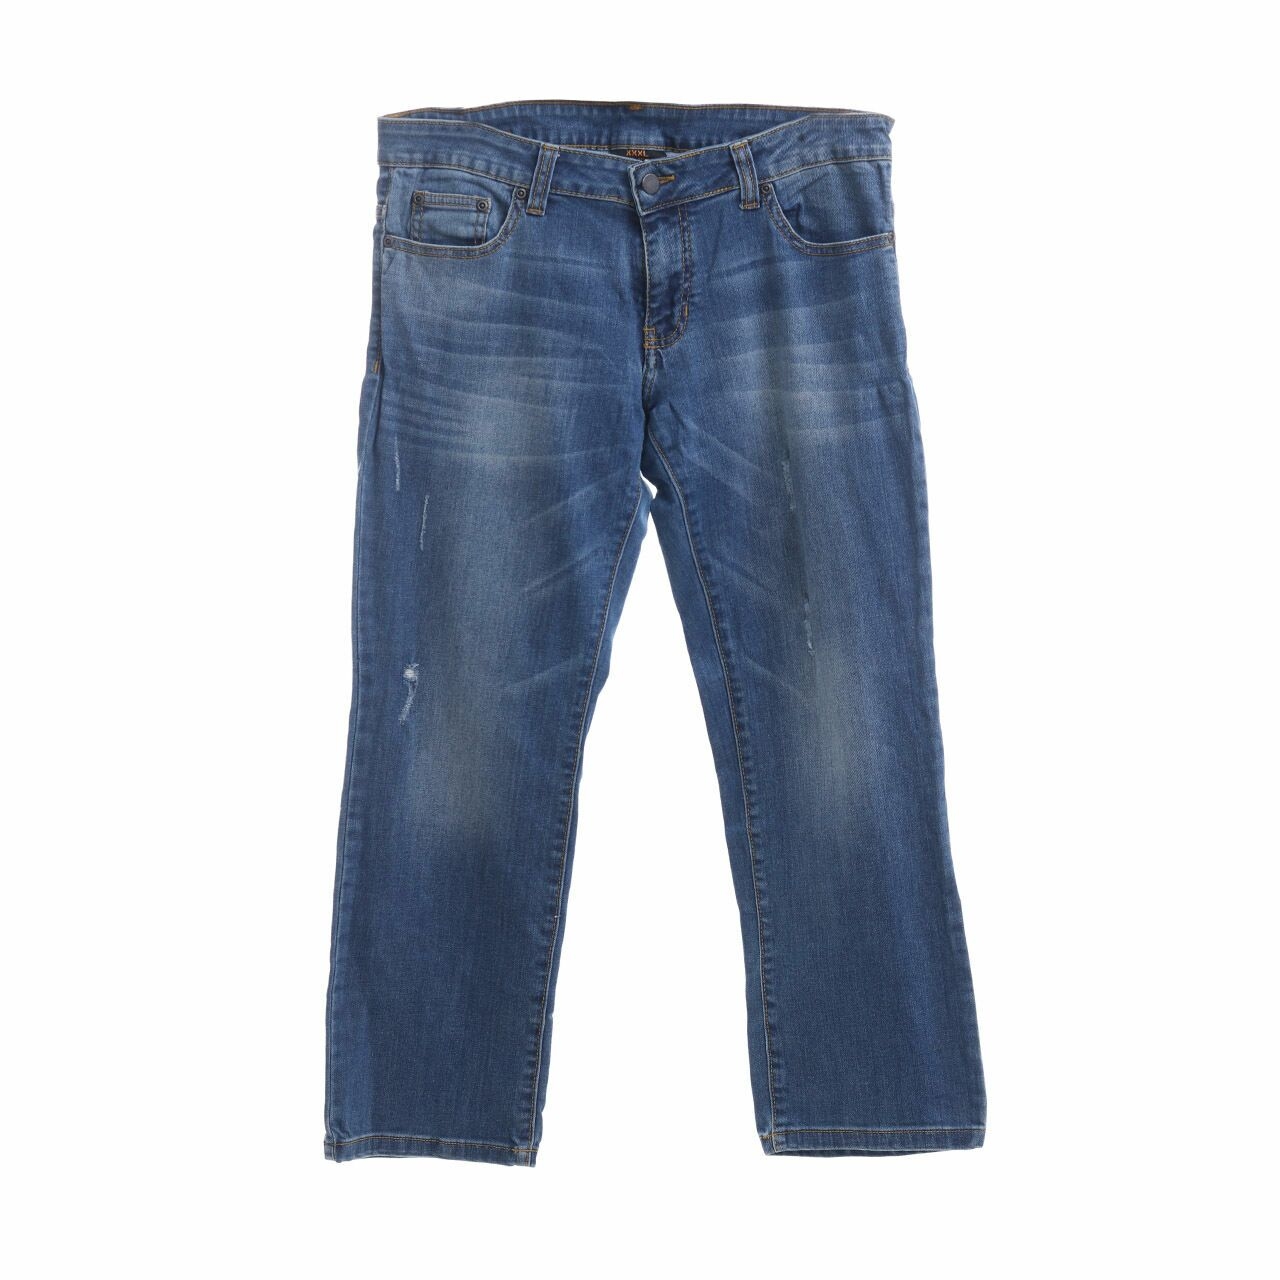 Dust Jeans Blue Denim Long Pants